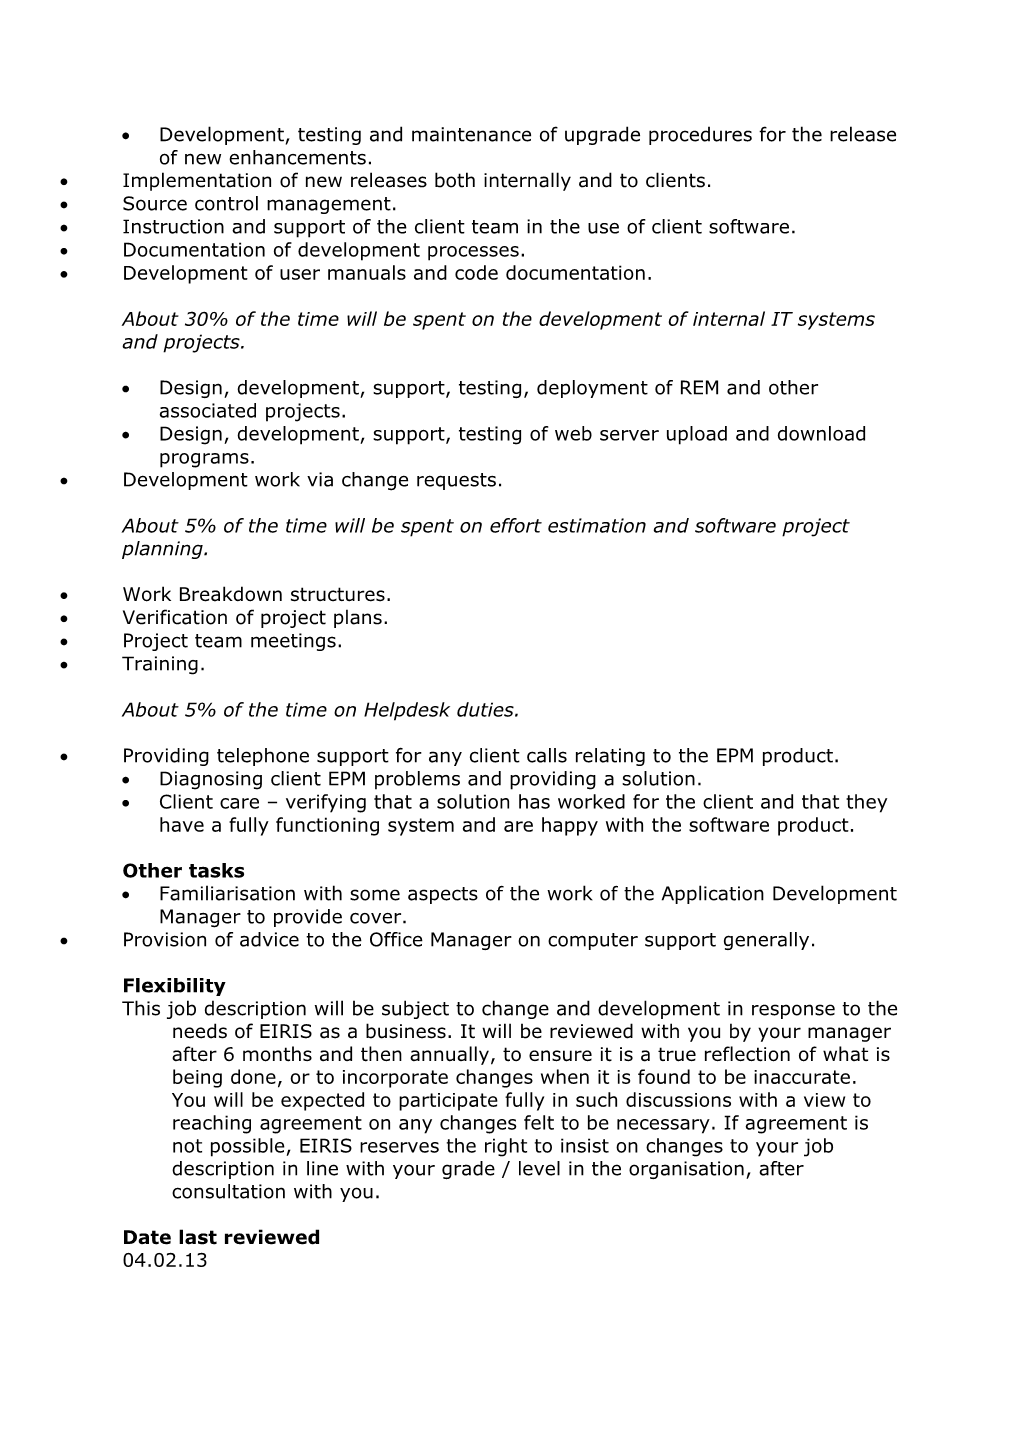 Standard Job Descriptions Format